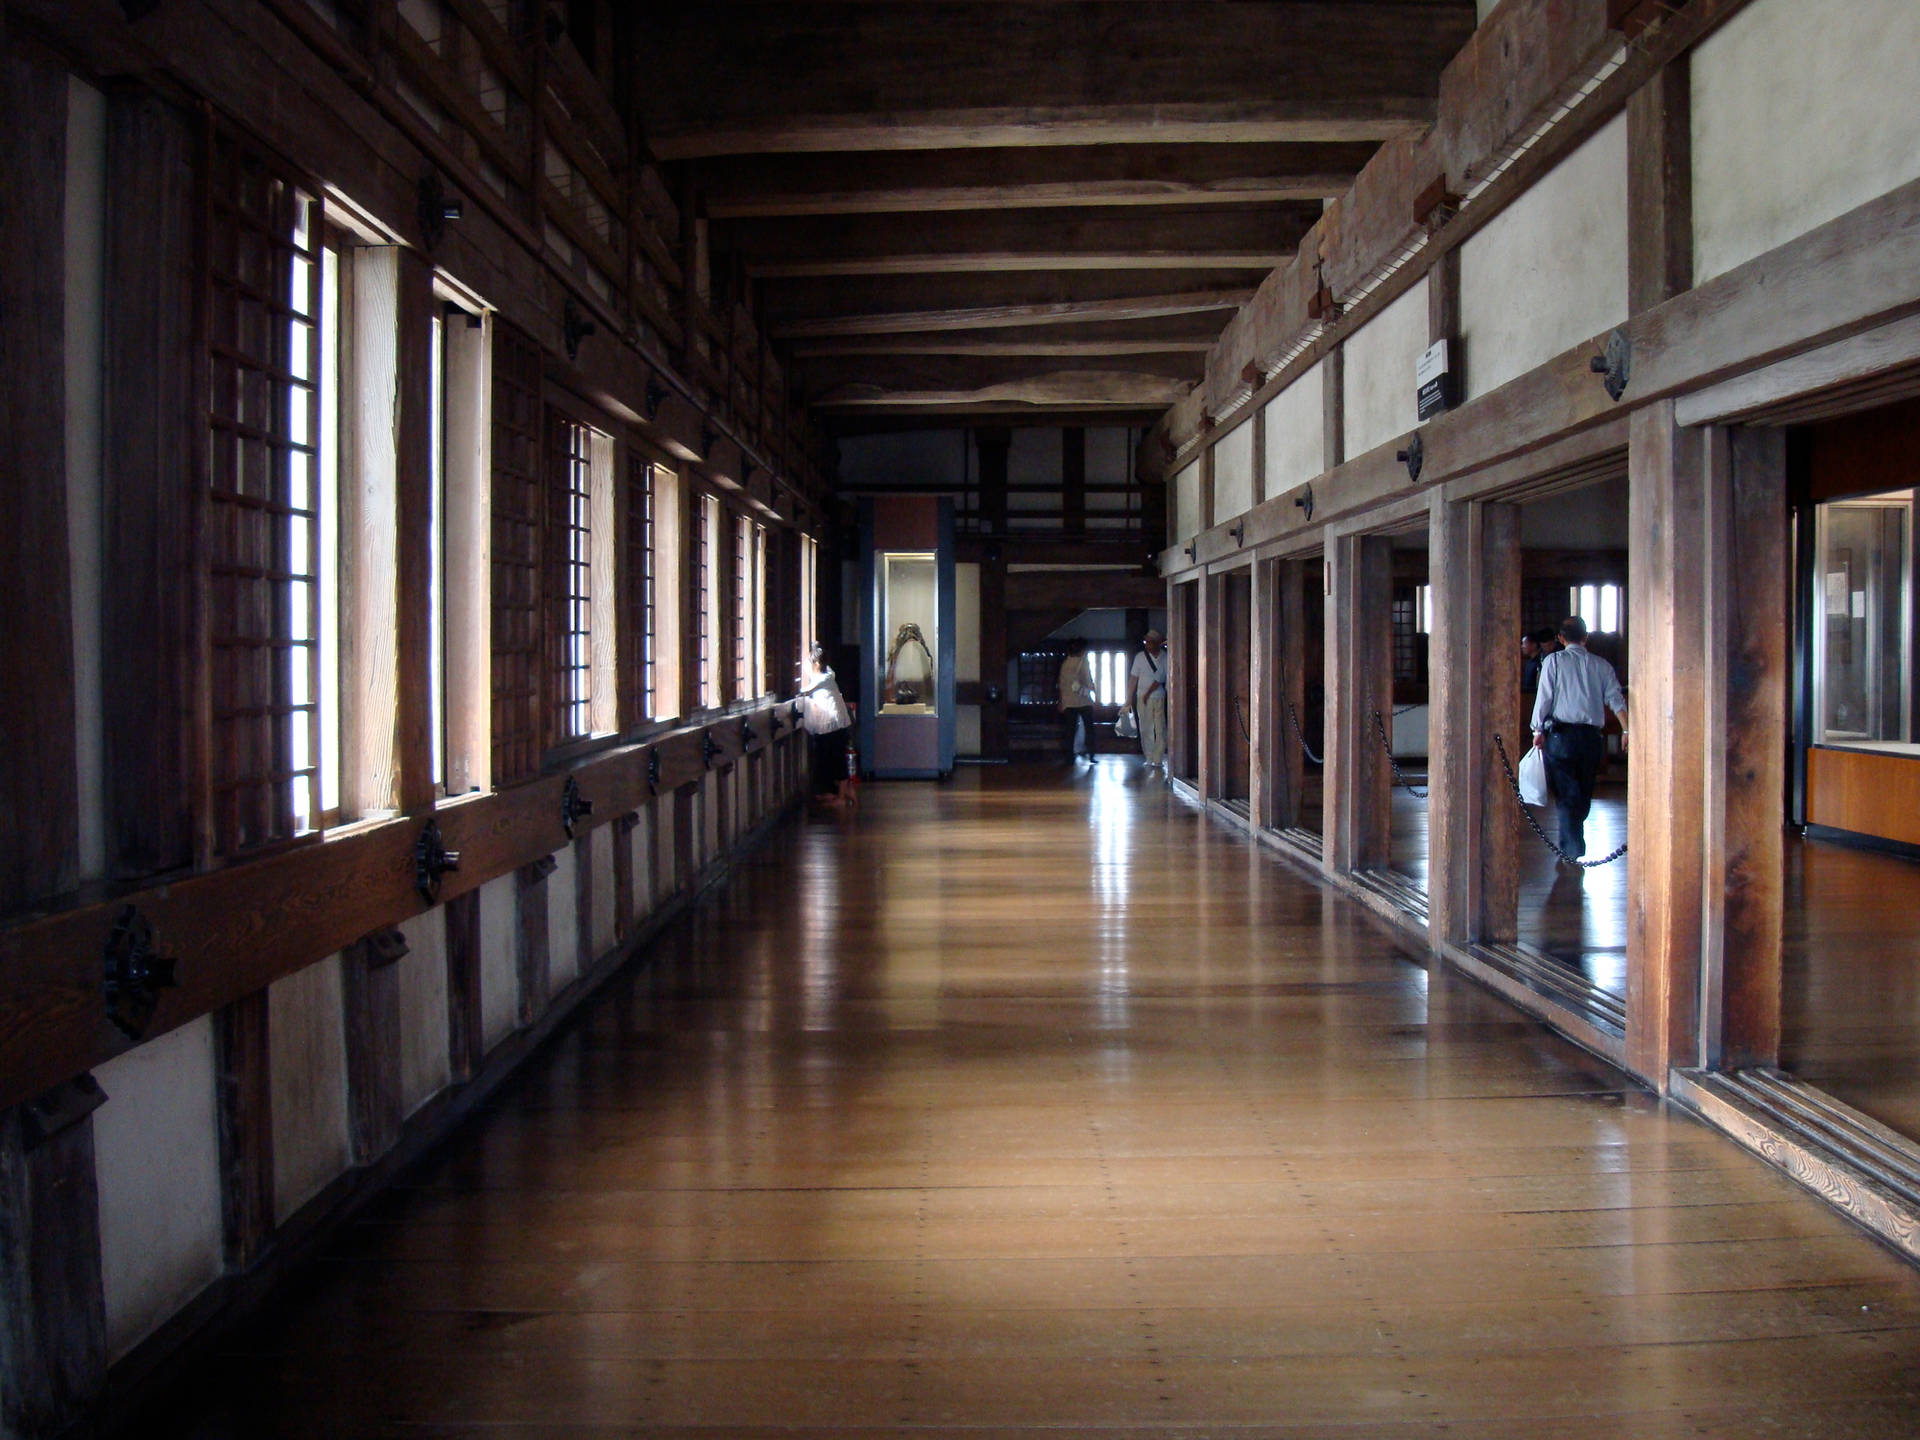 Himeji Castle From The Inside